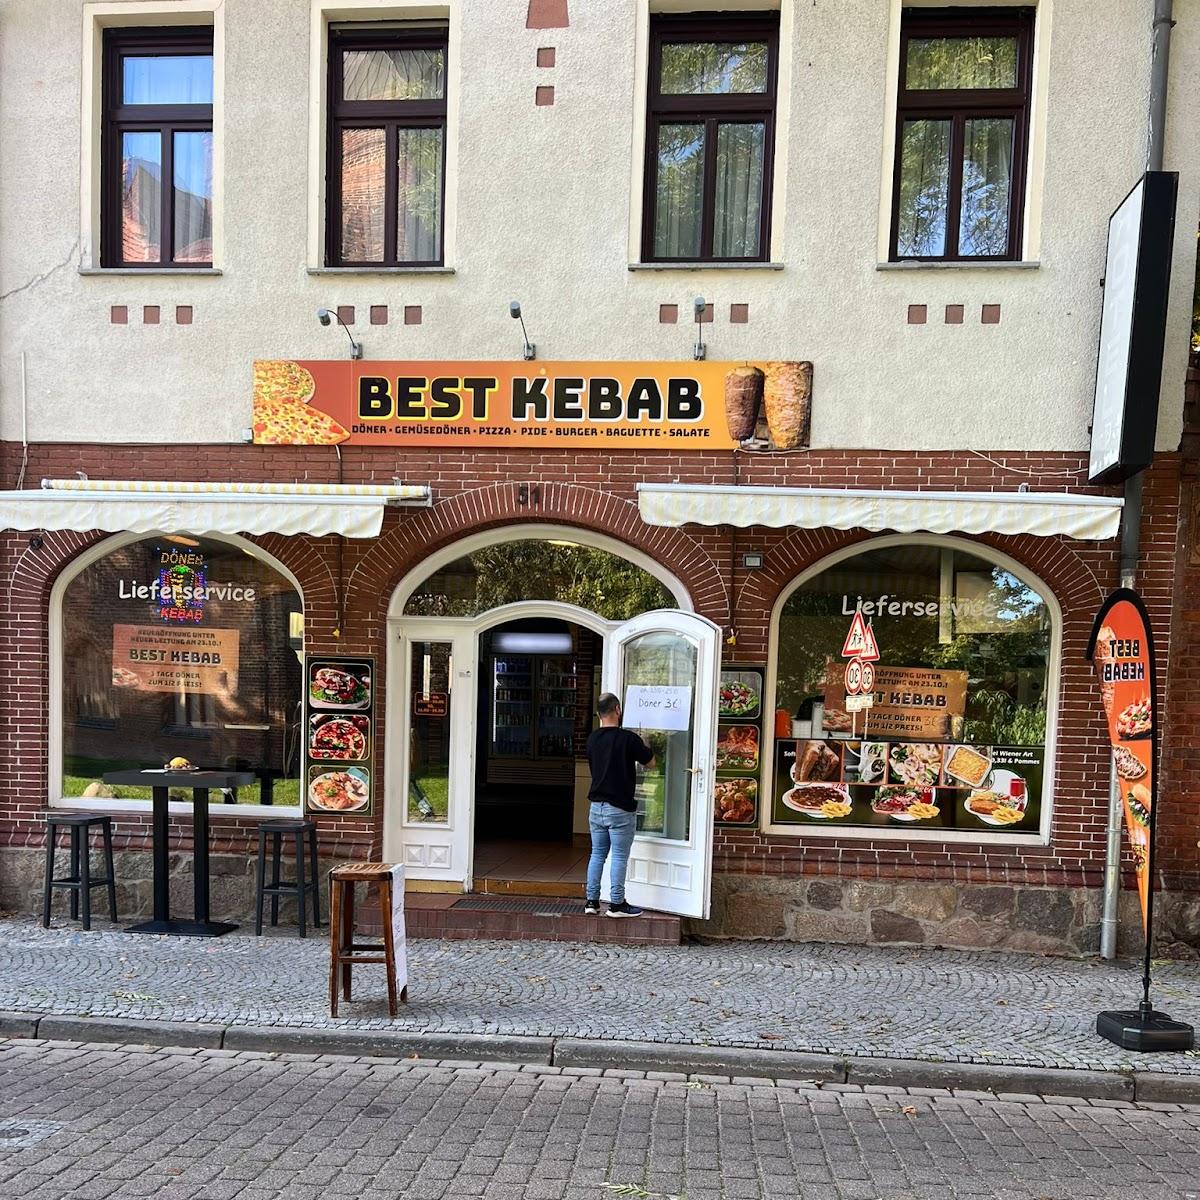 Restaurant "Best Kebab" in Salzwedel